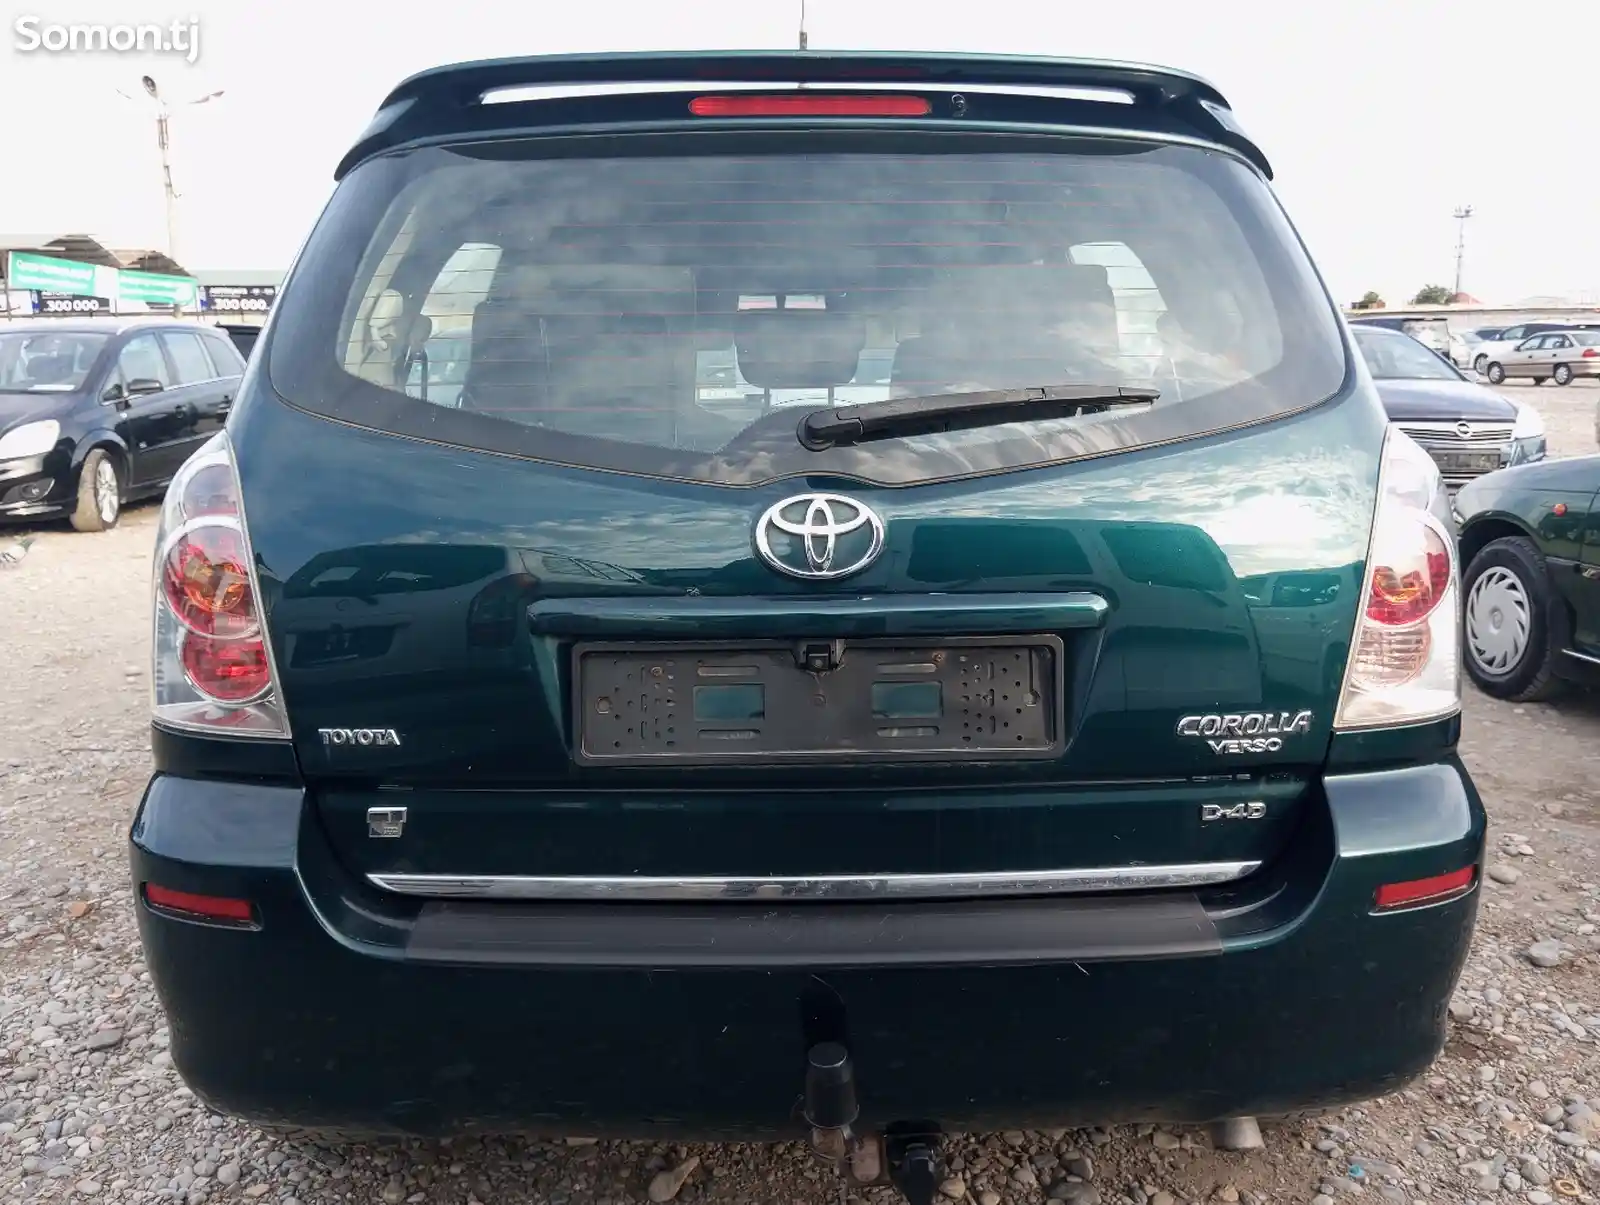 Toyota Corolla Verso, 2006-4